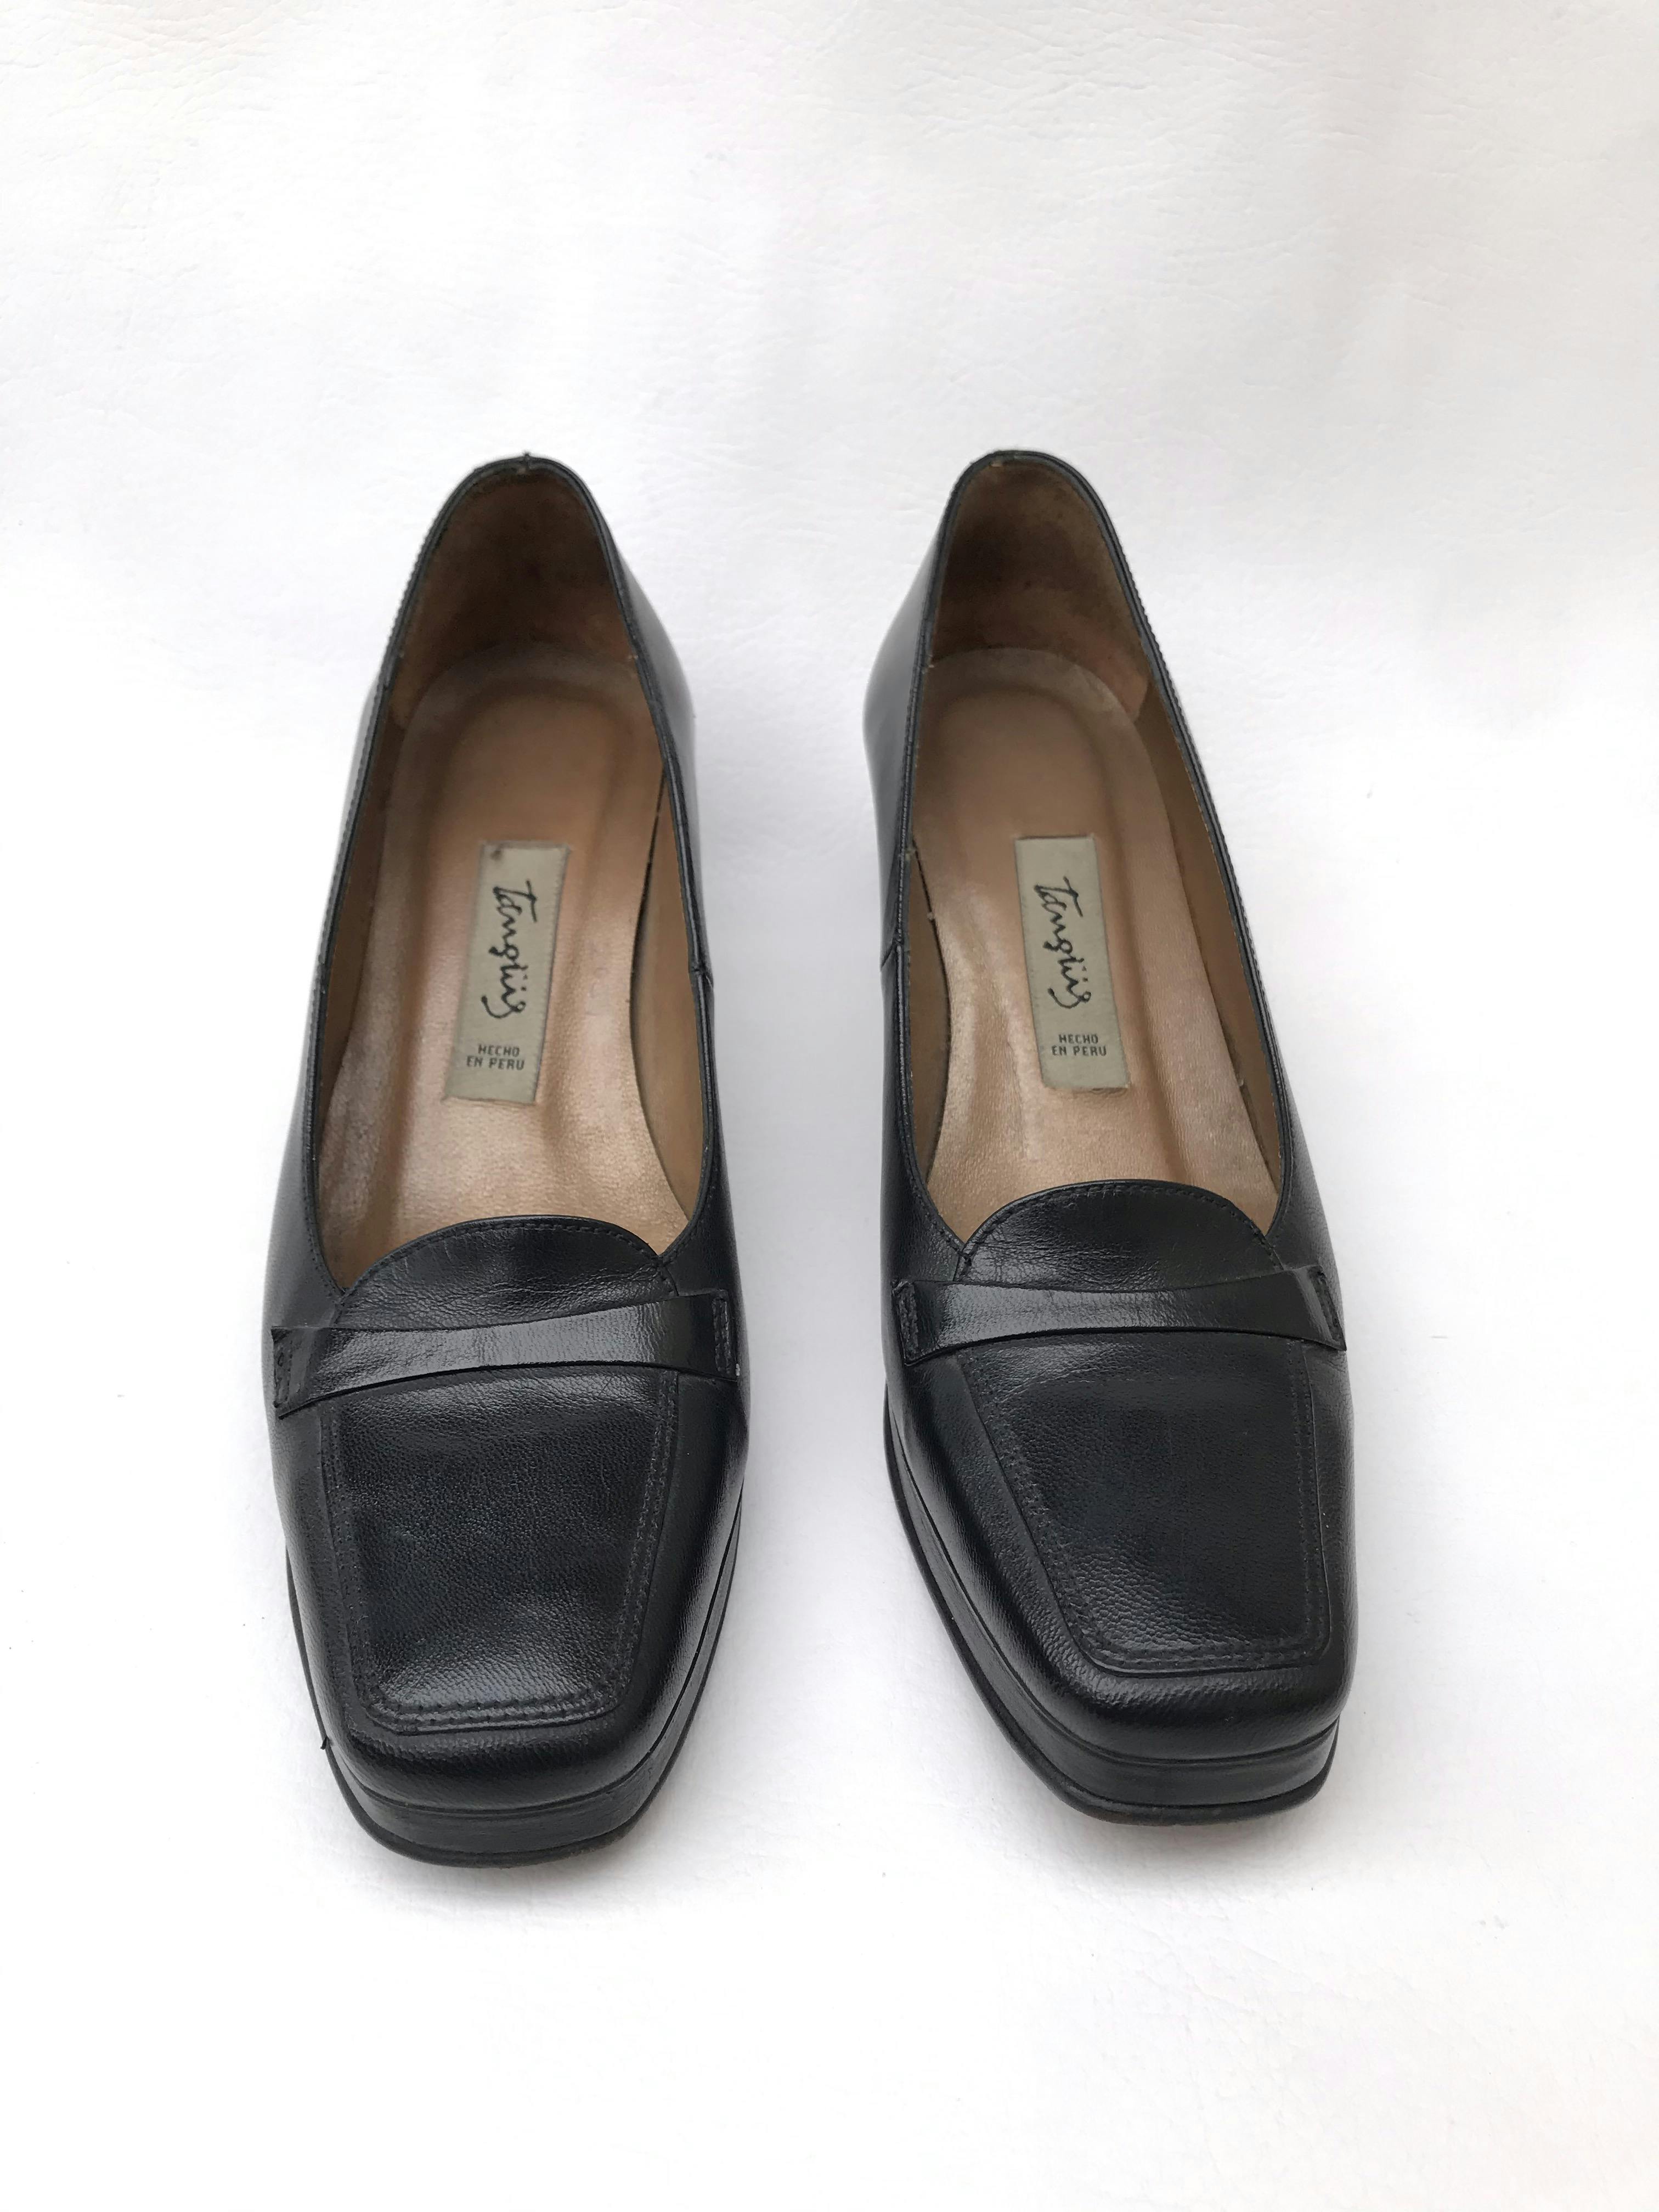 Zapatos Tanguis 100% cuero negro, taco 5. Estado 9/10. Precio original S/ 200